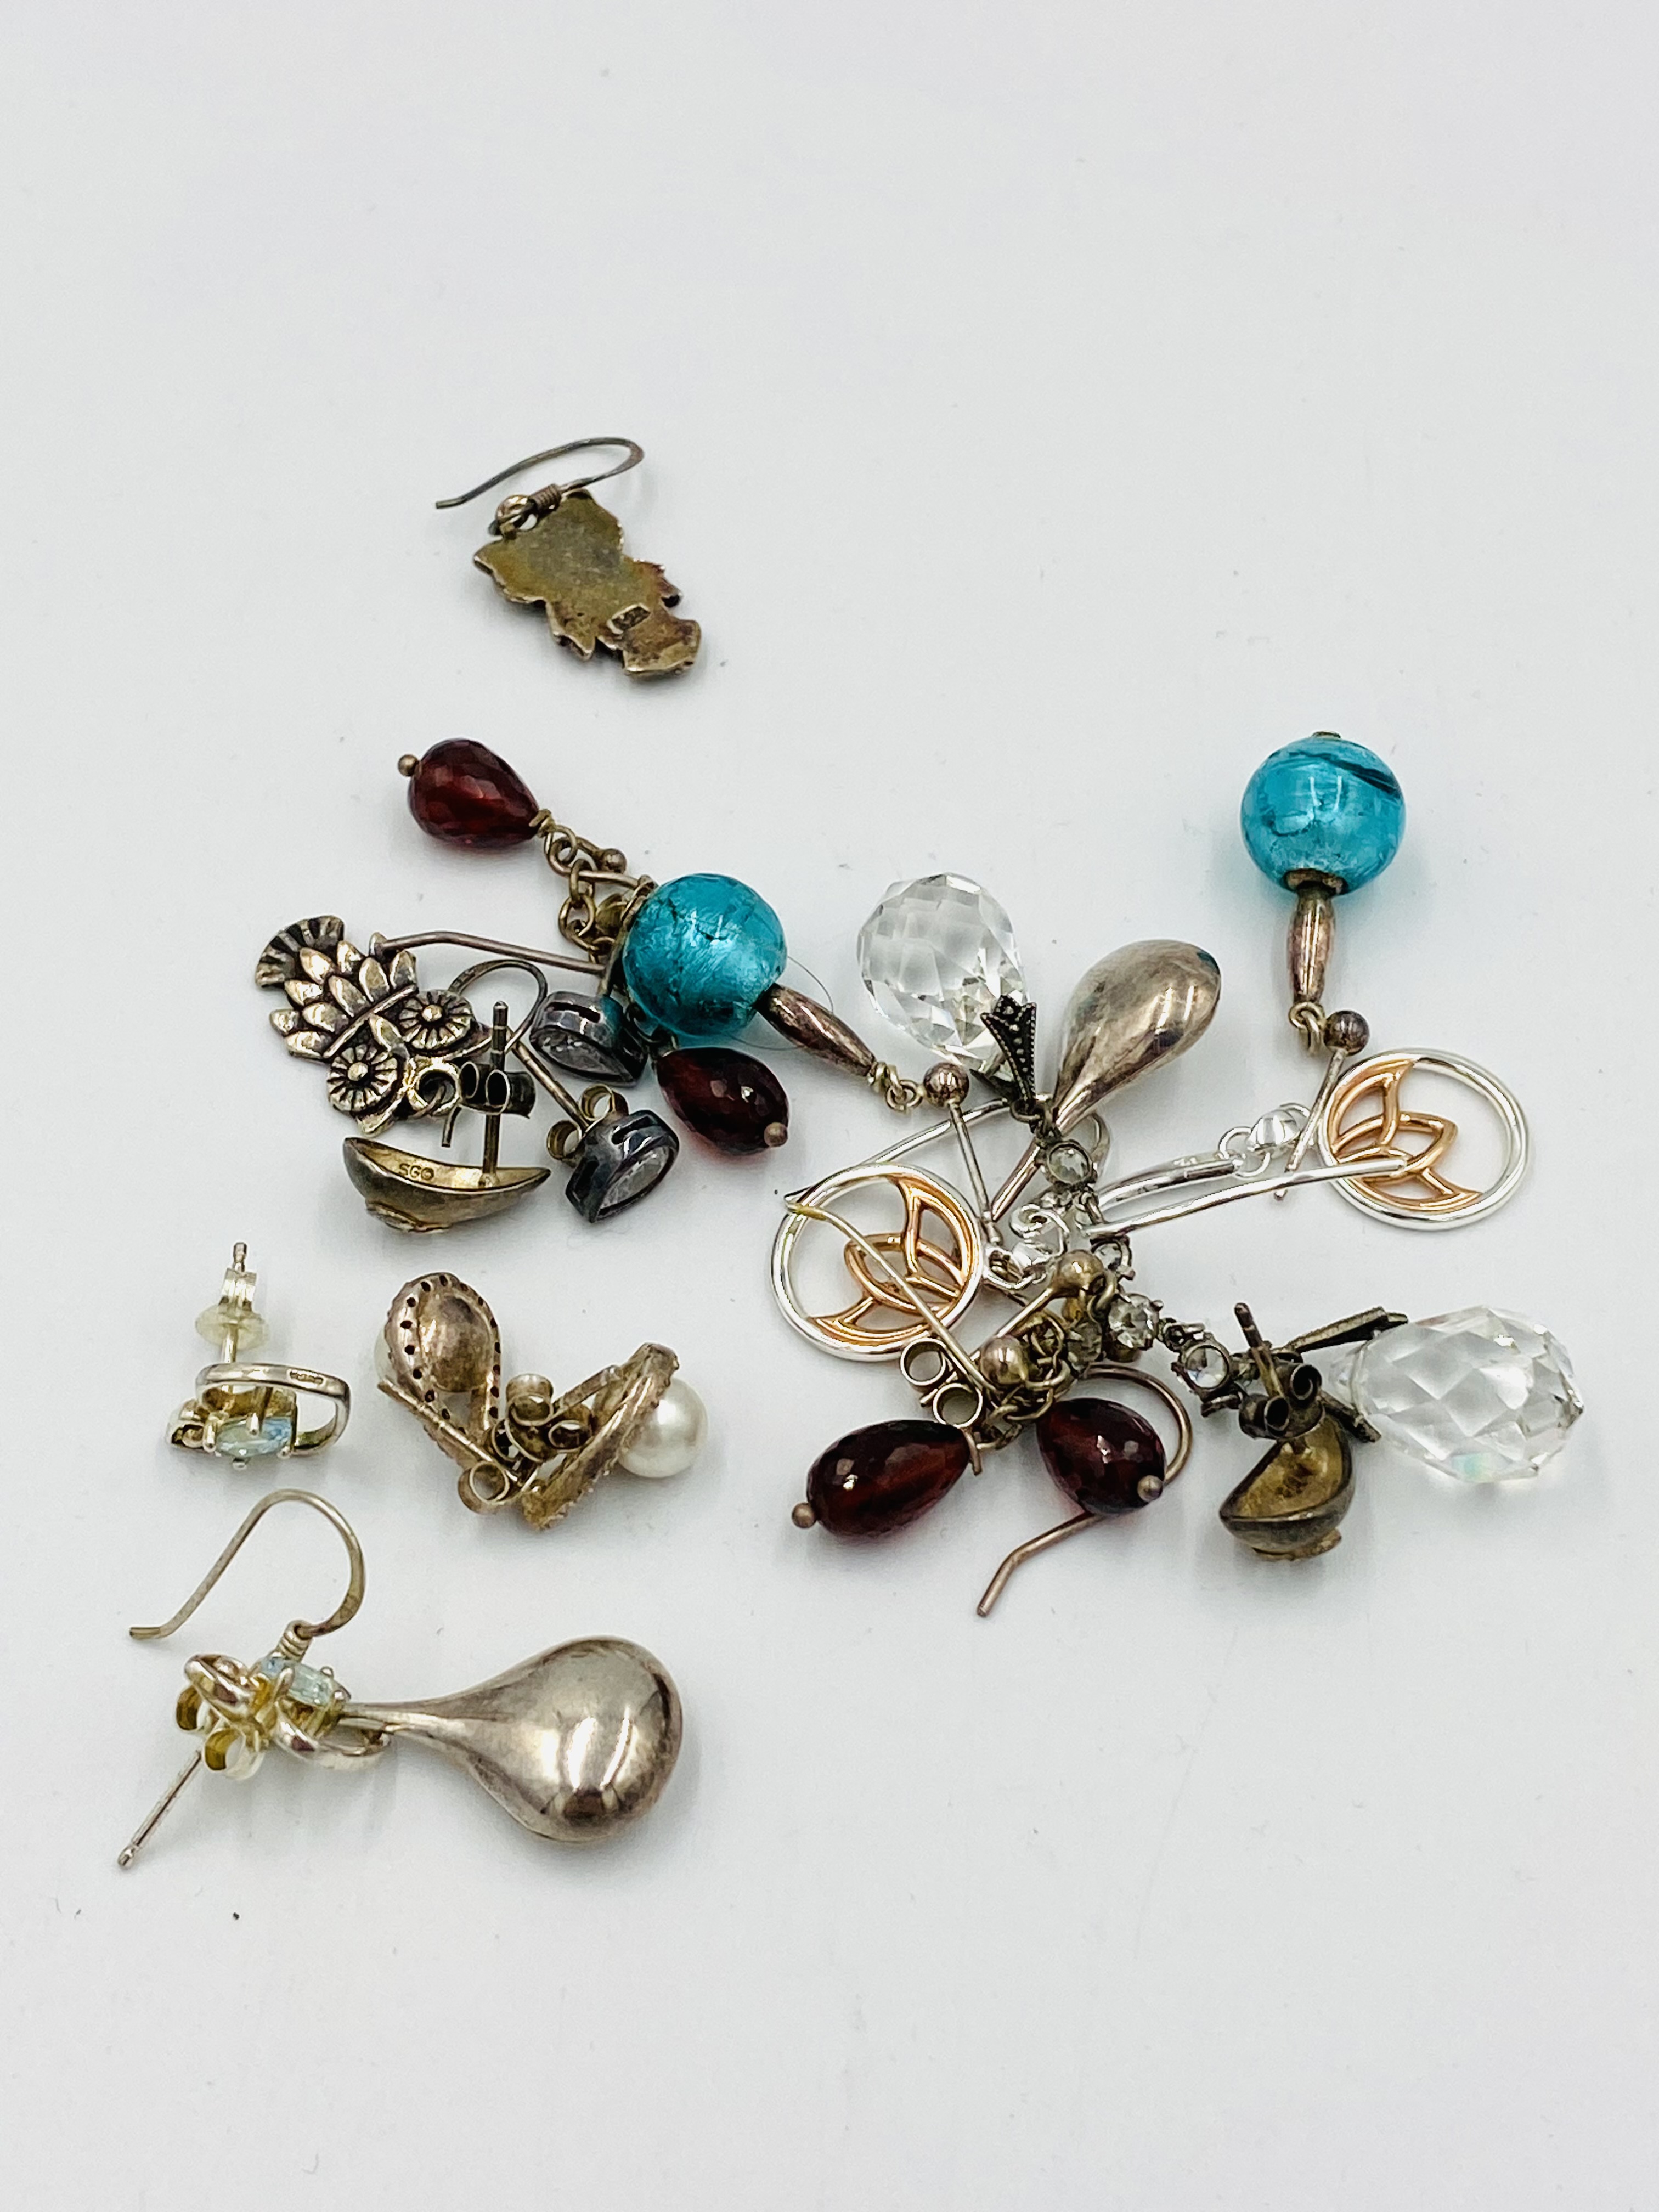 Ten pairs of sterling silver earrings